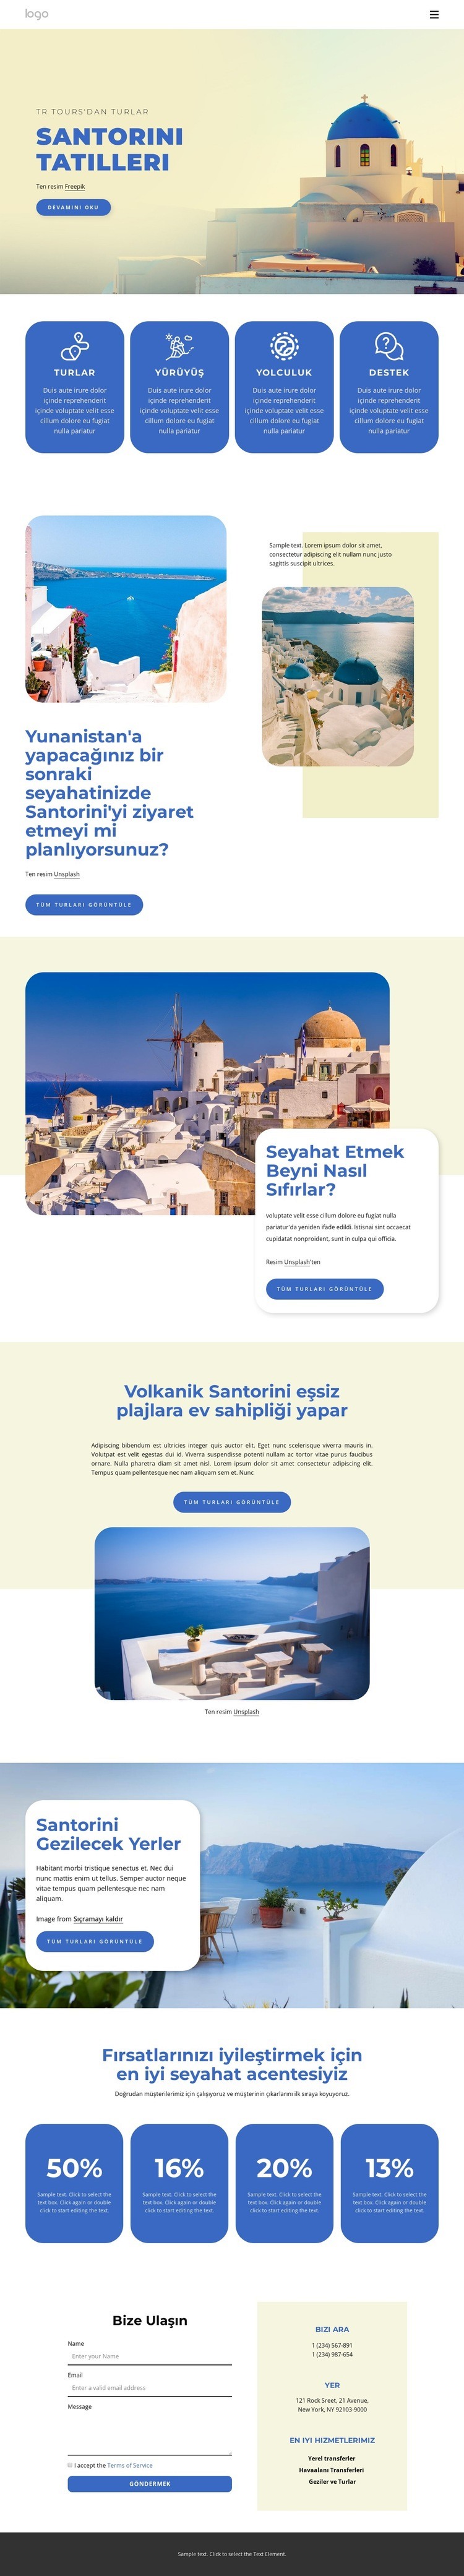 Santorini'deki Tatiller Web Sitesi Mockup'ı